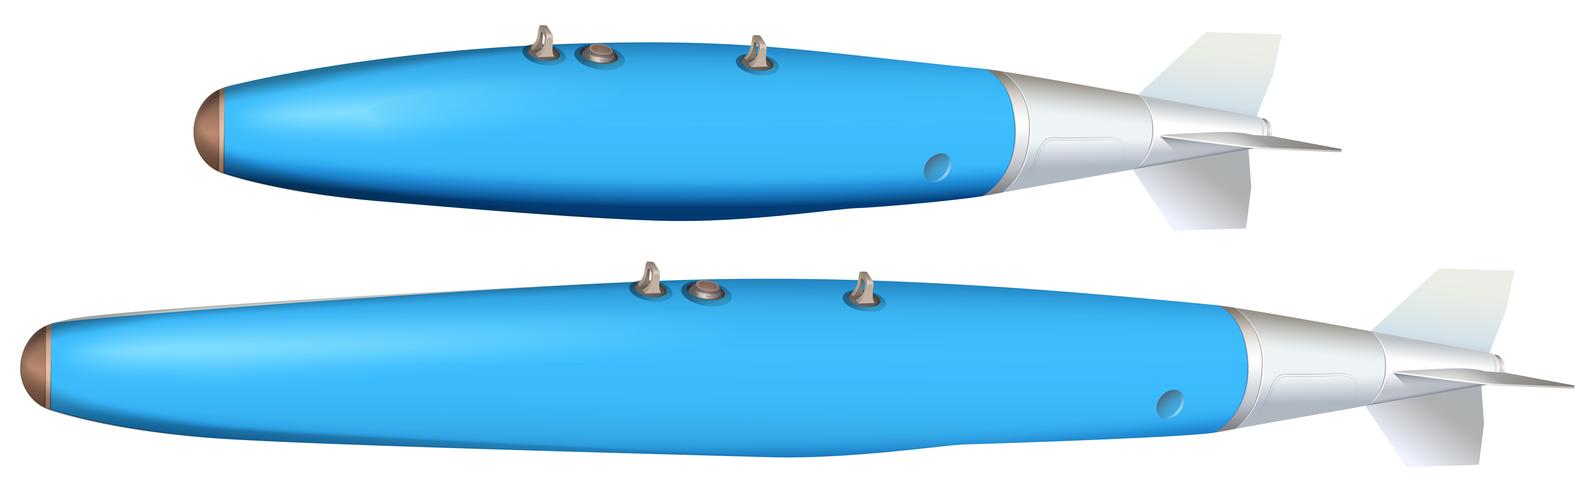 Deux modèles de bombes en bleu vecteur